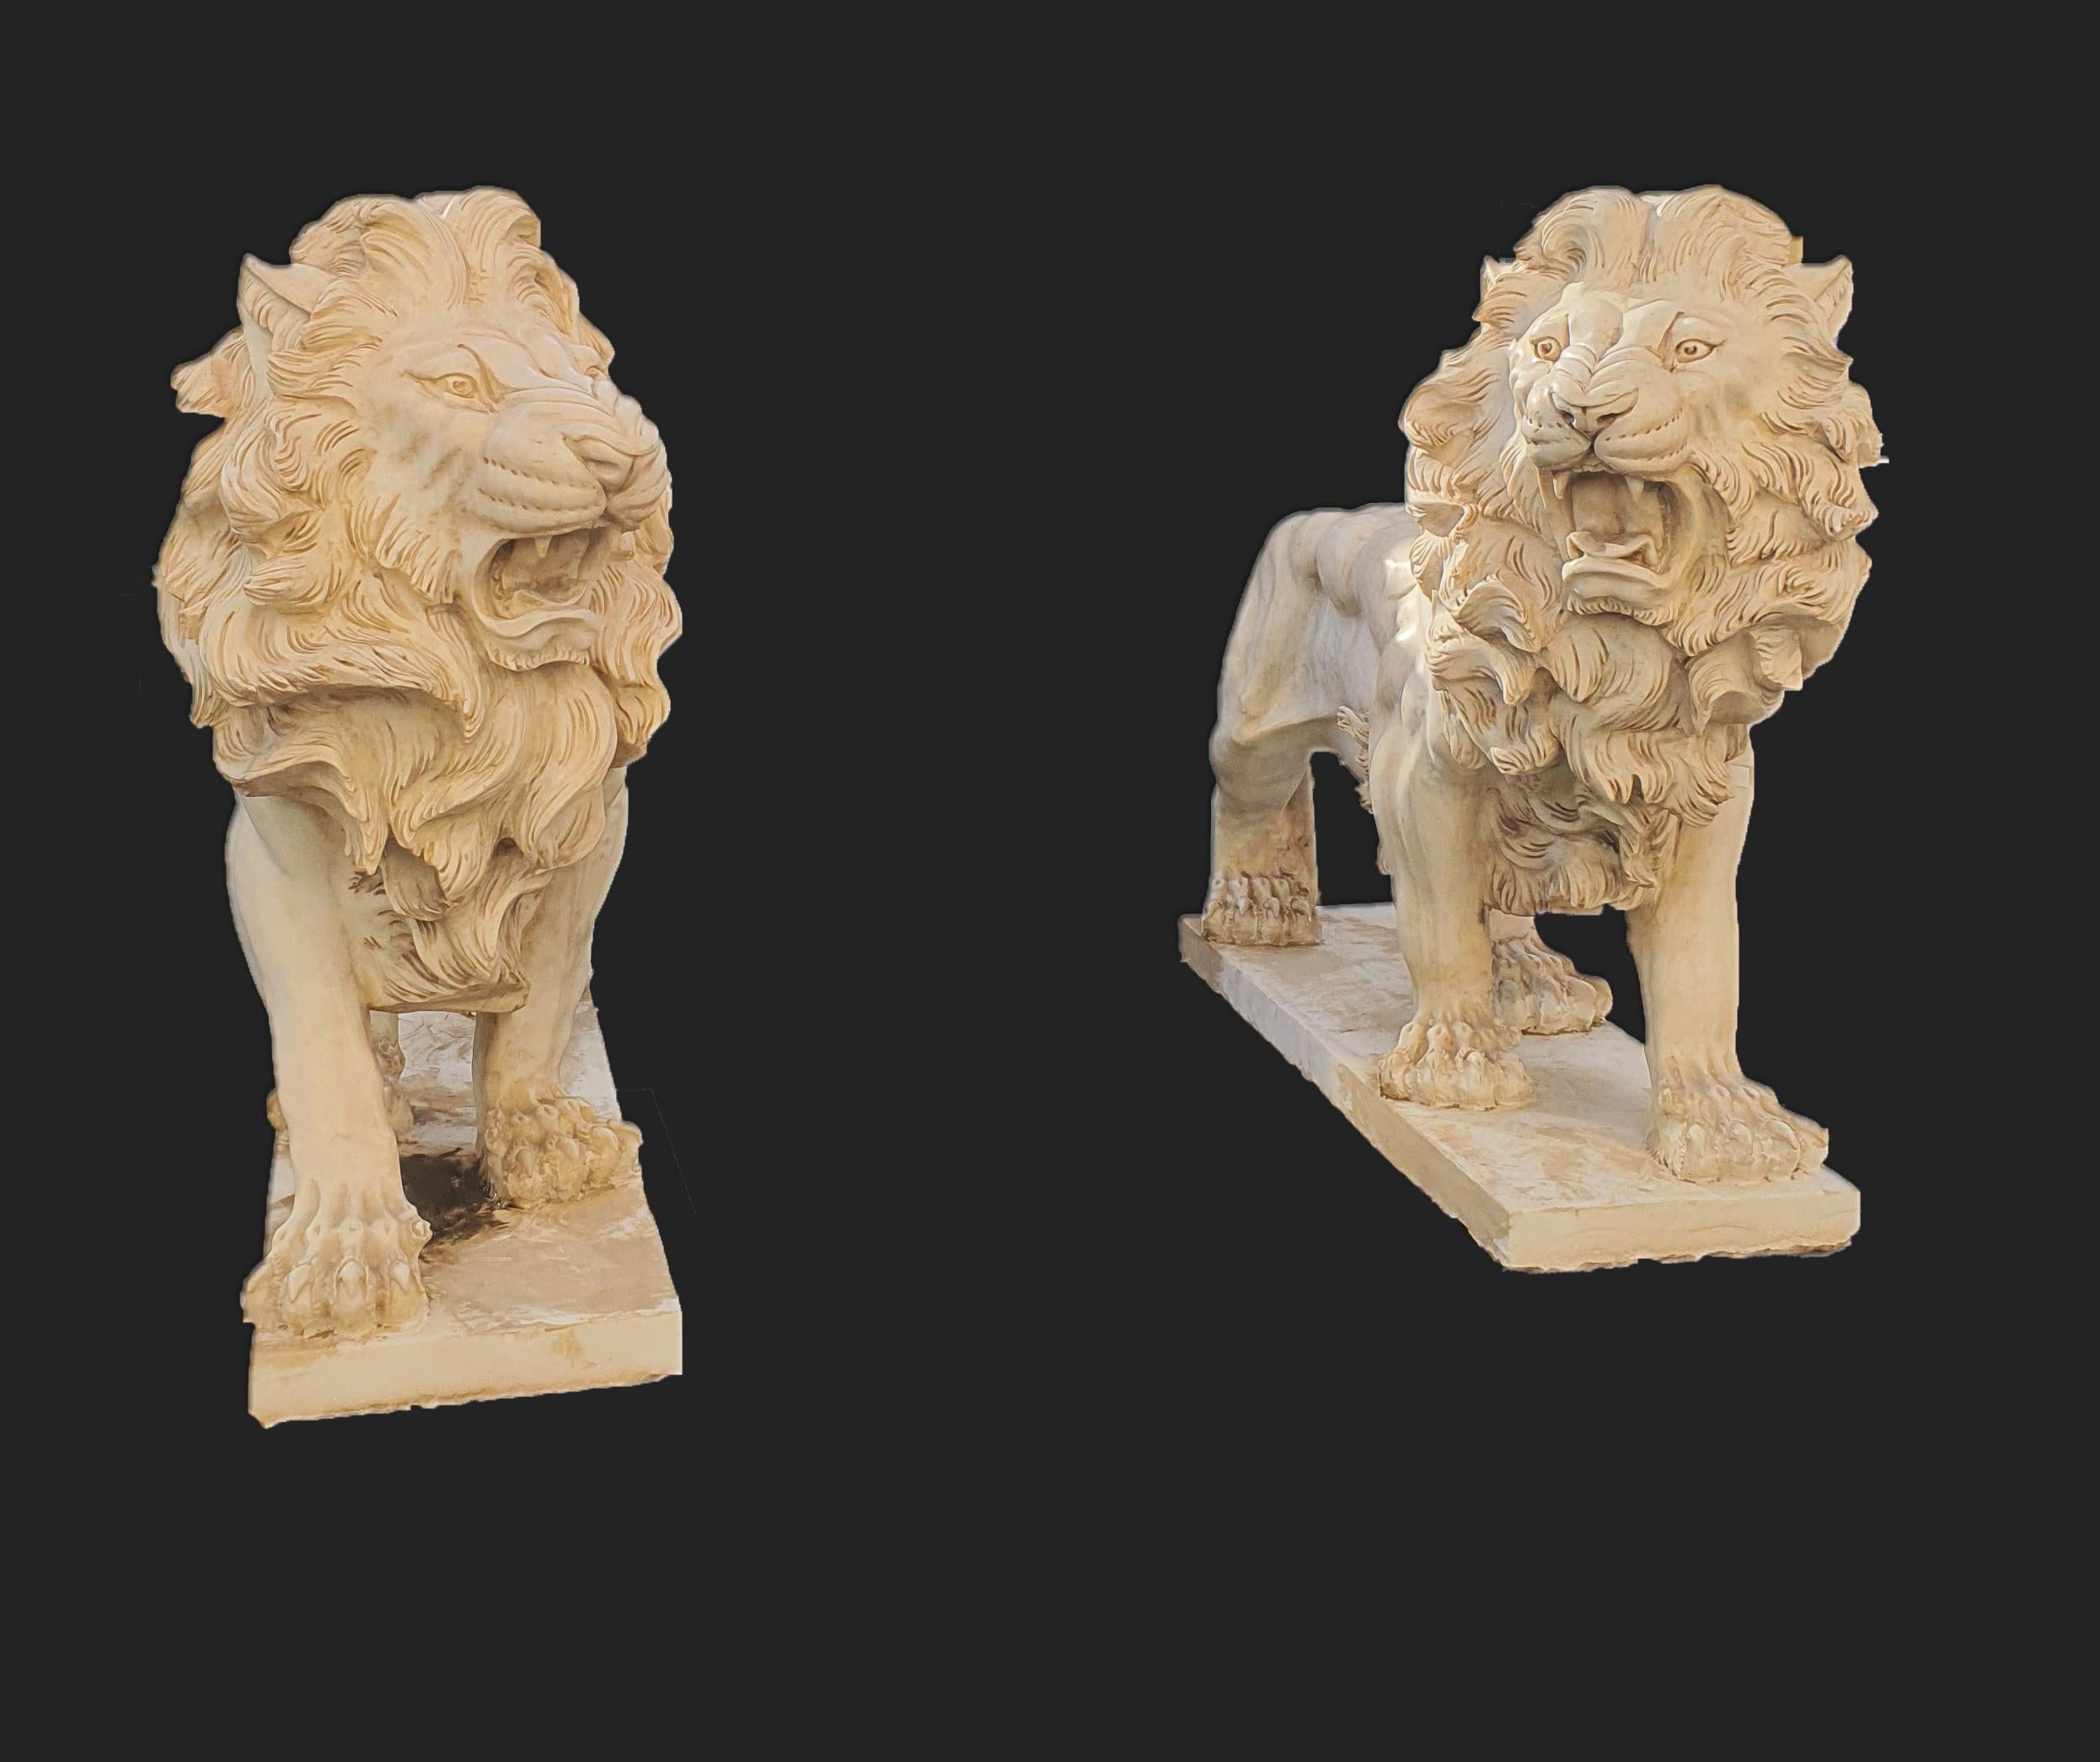 Élégante paire de sculptures statuaires en marbre blanc représentant des lions. Une sculpture finement ciselée dans les moindres détails.